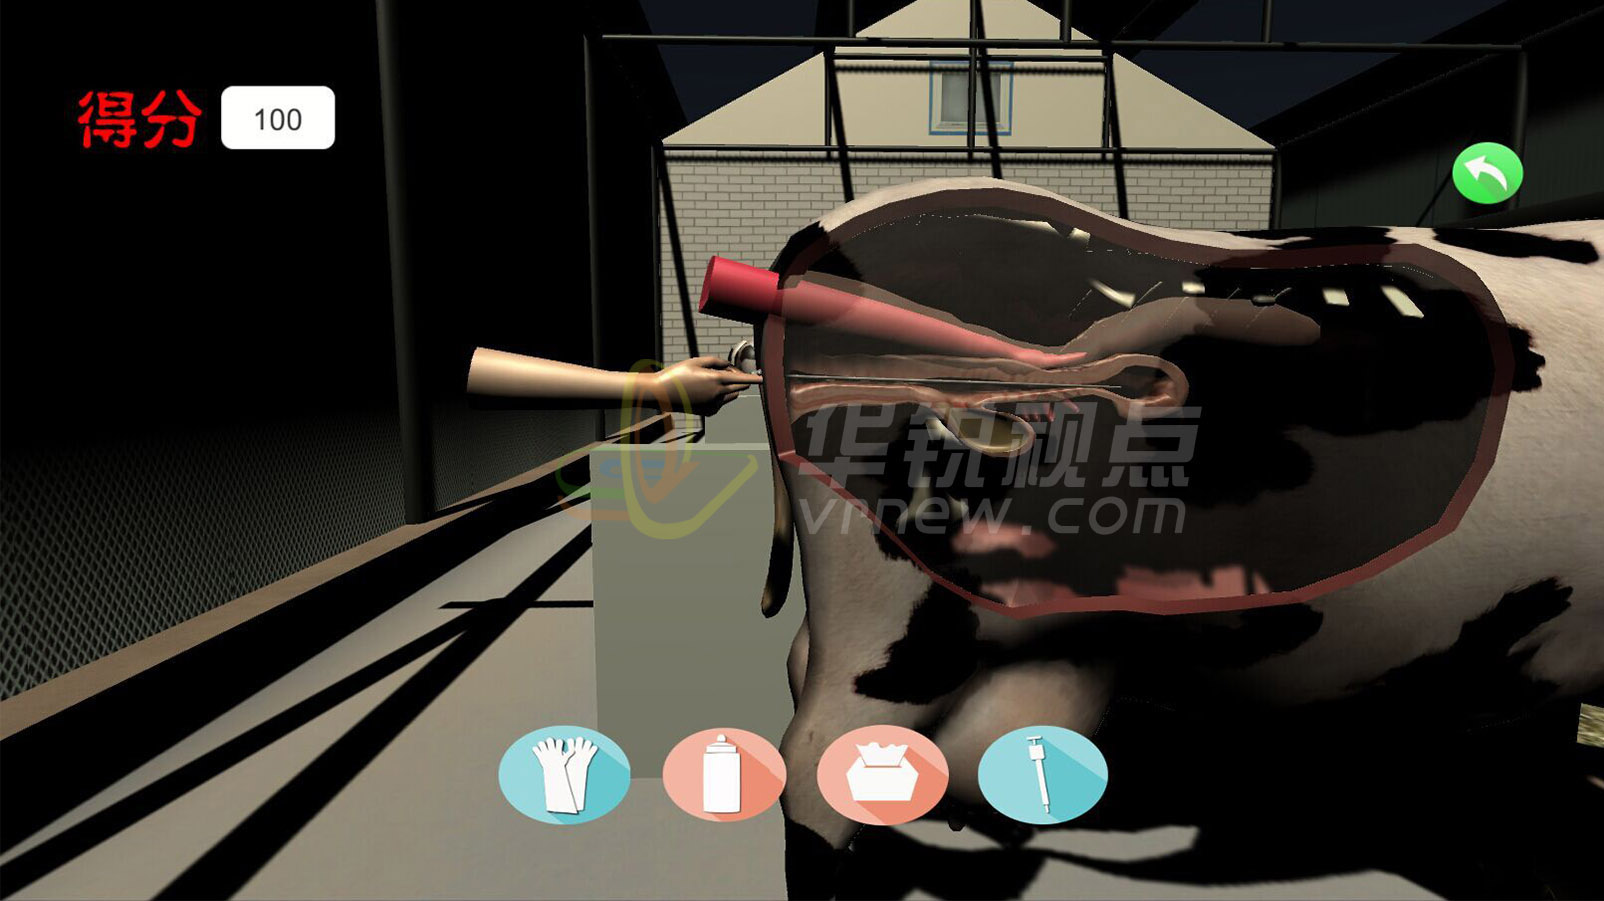 奶牛人工授精VR虚拟仿真实训系统